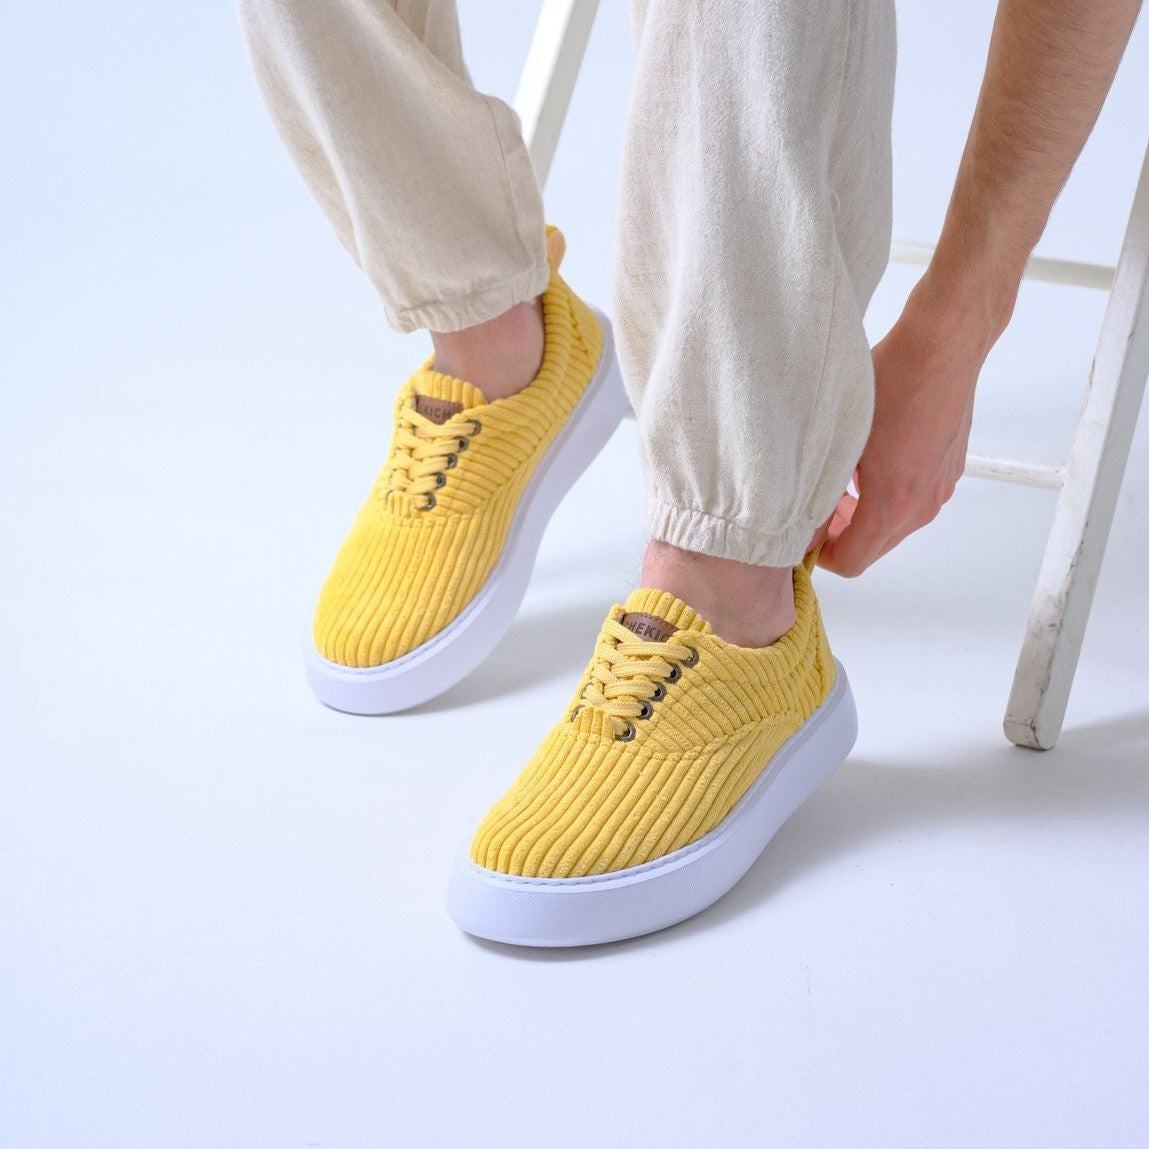 Men's Light Weight Summer Sneakers | Mario in Yellow